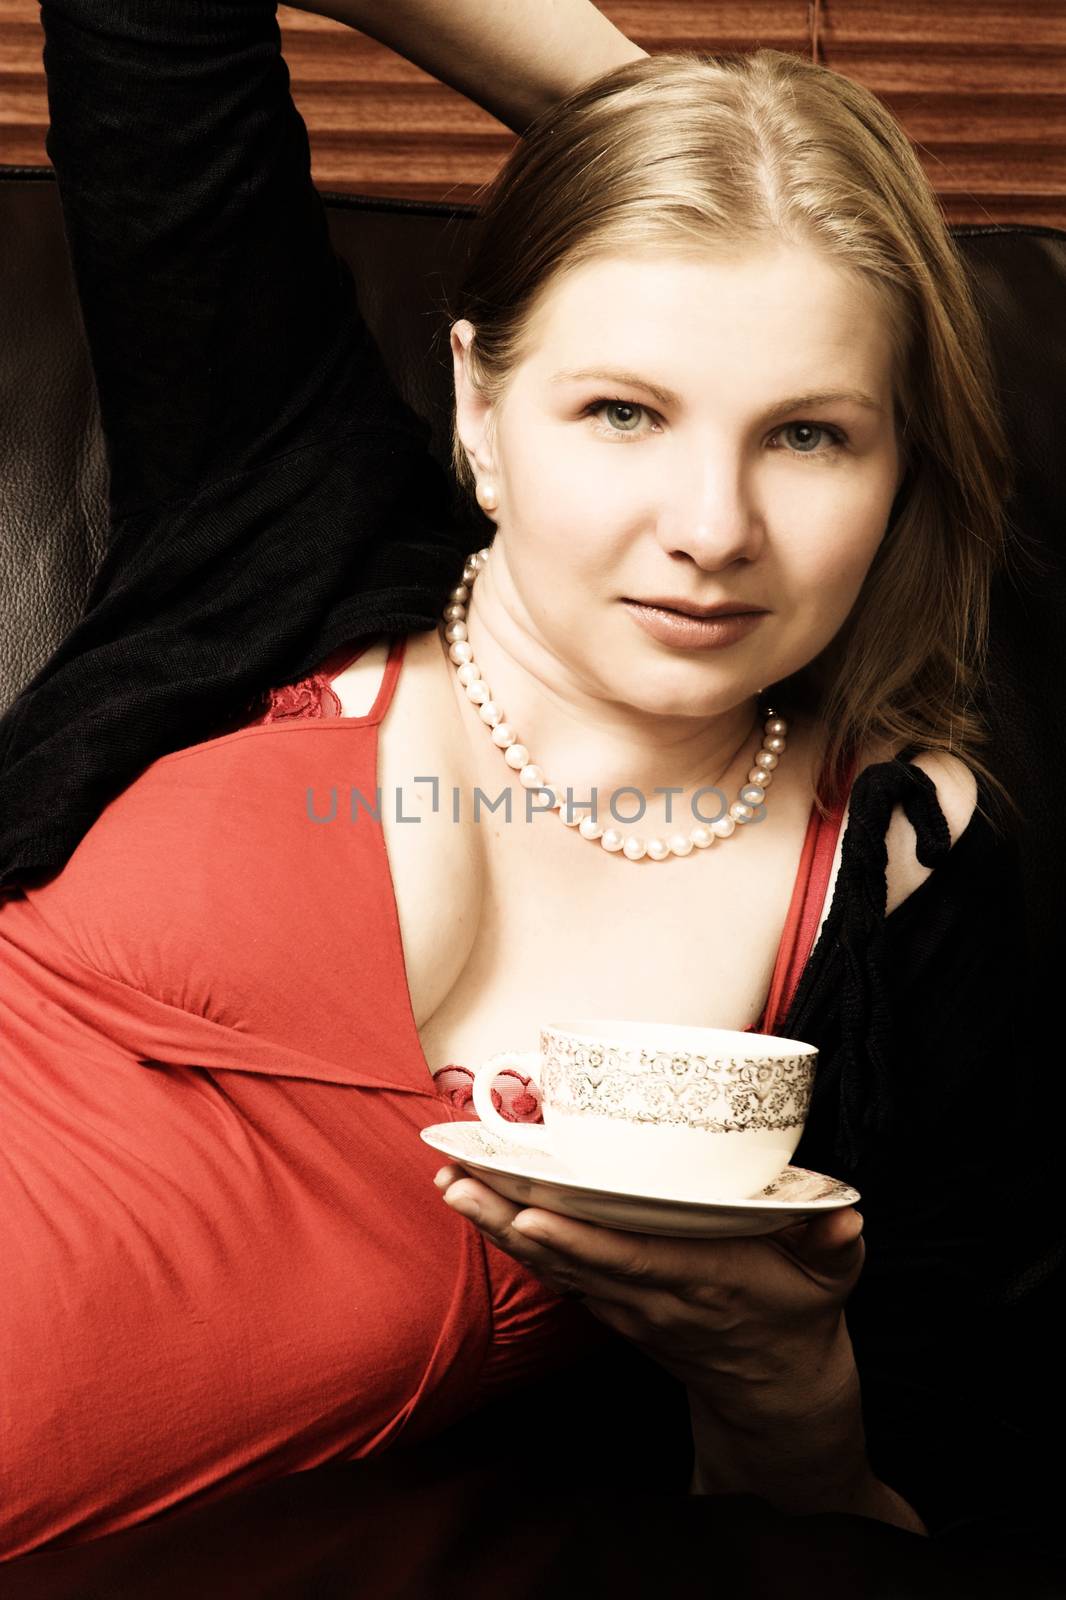 Beautiful young woman enjoying a cup of tea